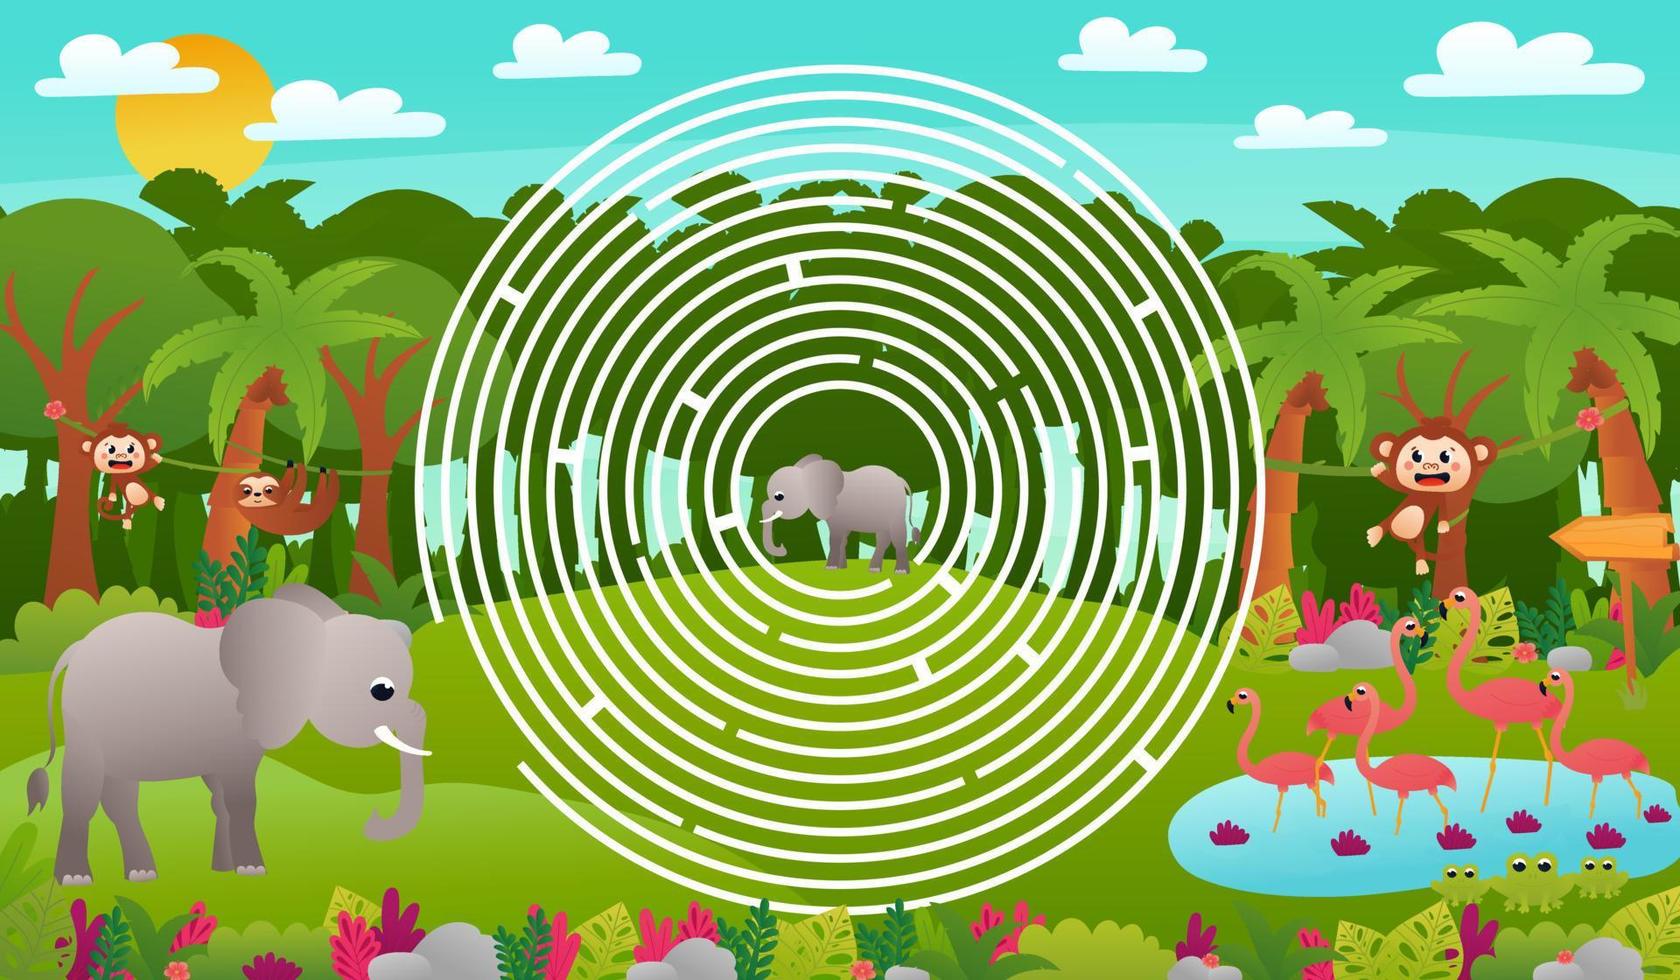 laberinto de círculo de bosque de selva tropical para niños con lindos personajes de elefante y flamencos con ranas, ayuda para encontrar el camino correcto, hoja de trabajo imprimible en estilo de dibujos animados para la escuela, tema de vida silvestre animal vector